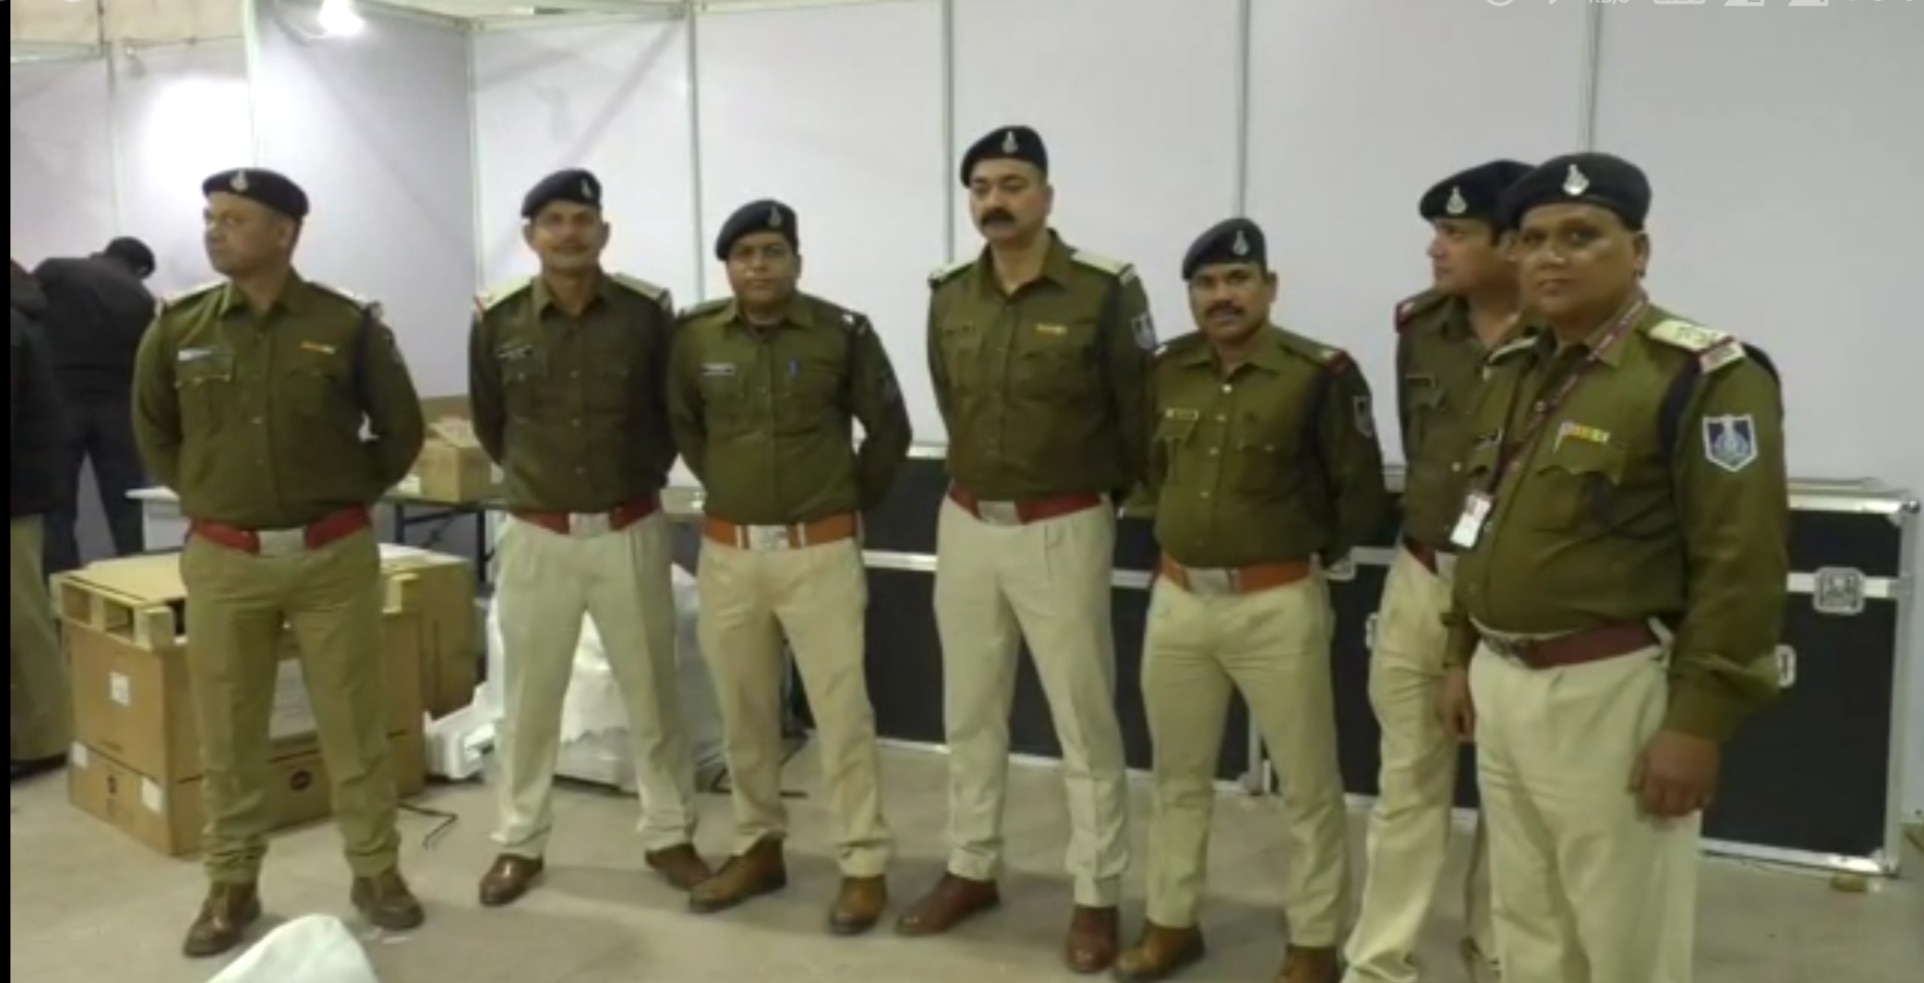 Pravasi Bharatiya Sammelan: इंदौर में अभेद सुरक्षा व्यवस्था, चप्पे-चप्पे पर रहेगी नजर, 10 हजार पुलिसकर्मियों की तैनाती